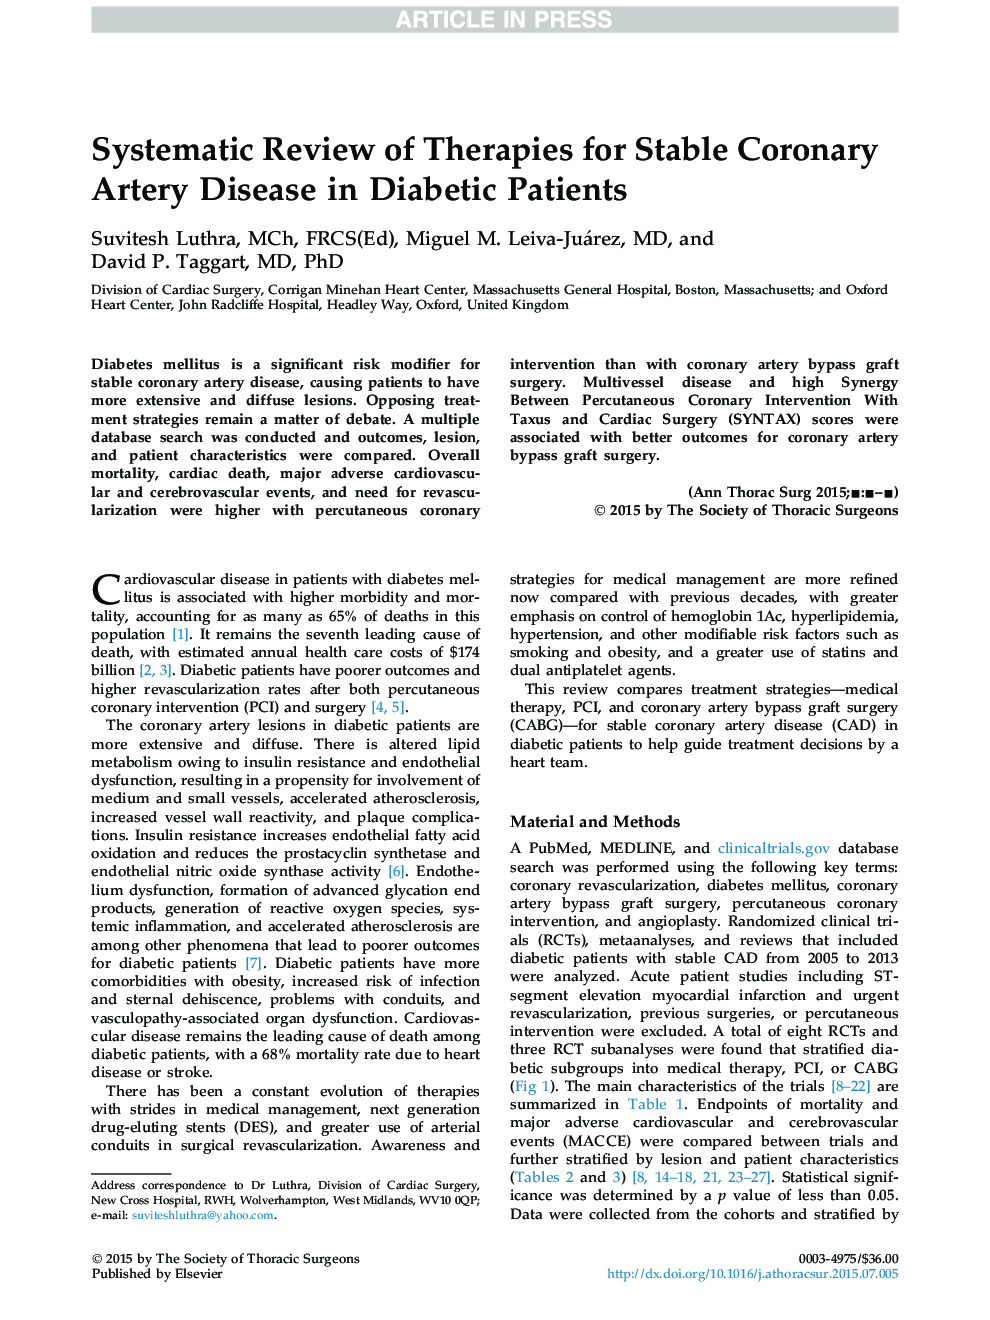 بررسی سیستماتیک درمان برای بیماری های عروق کرونر پایدار در بیماران دیابتی 